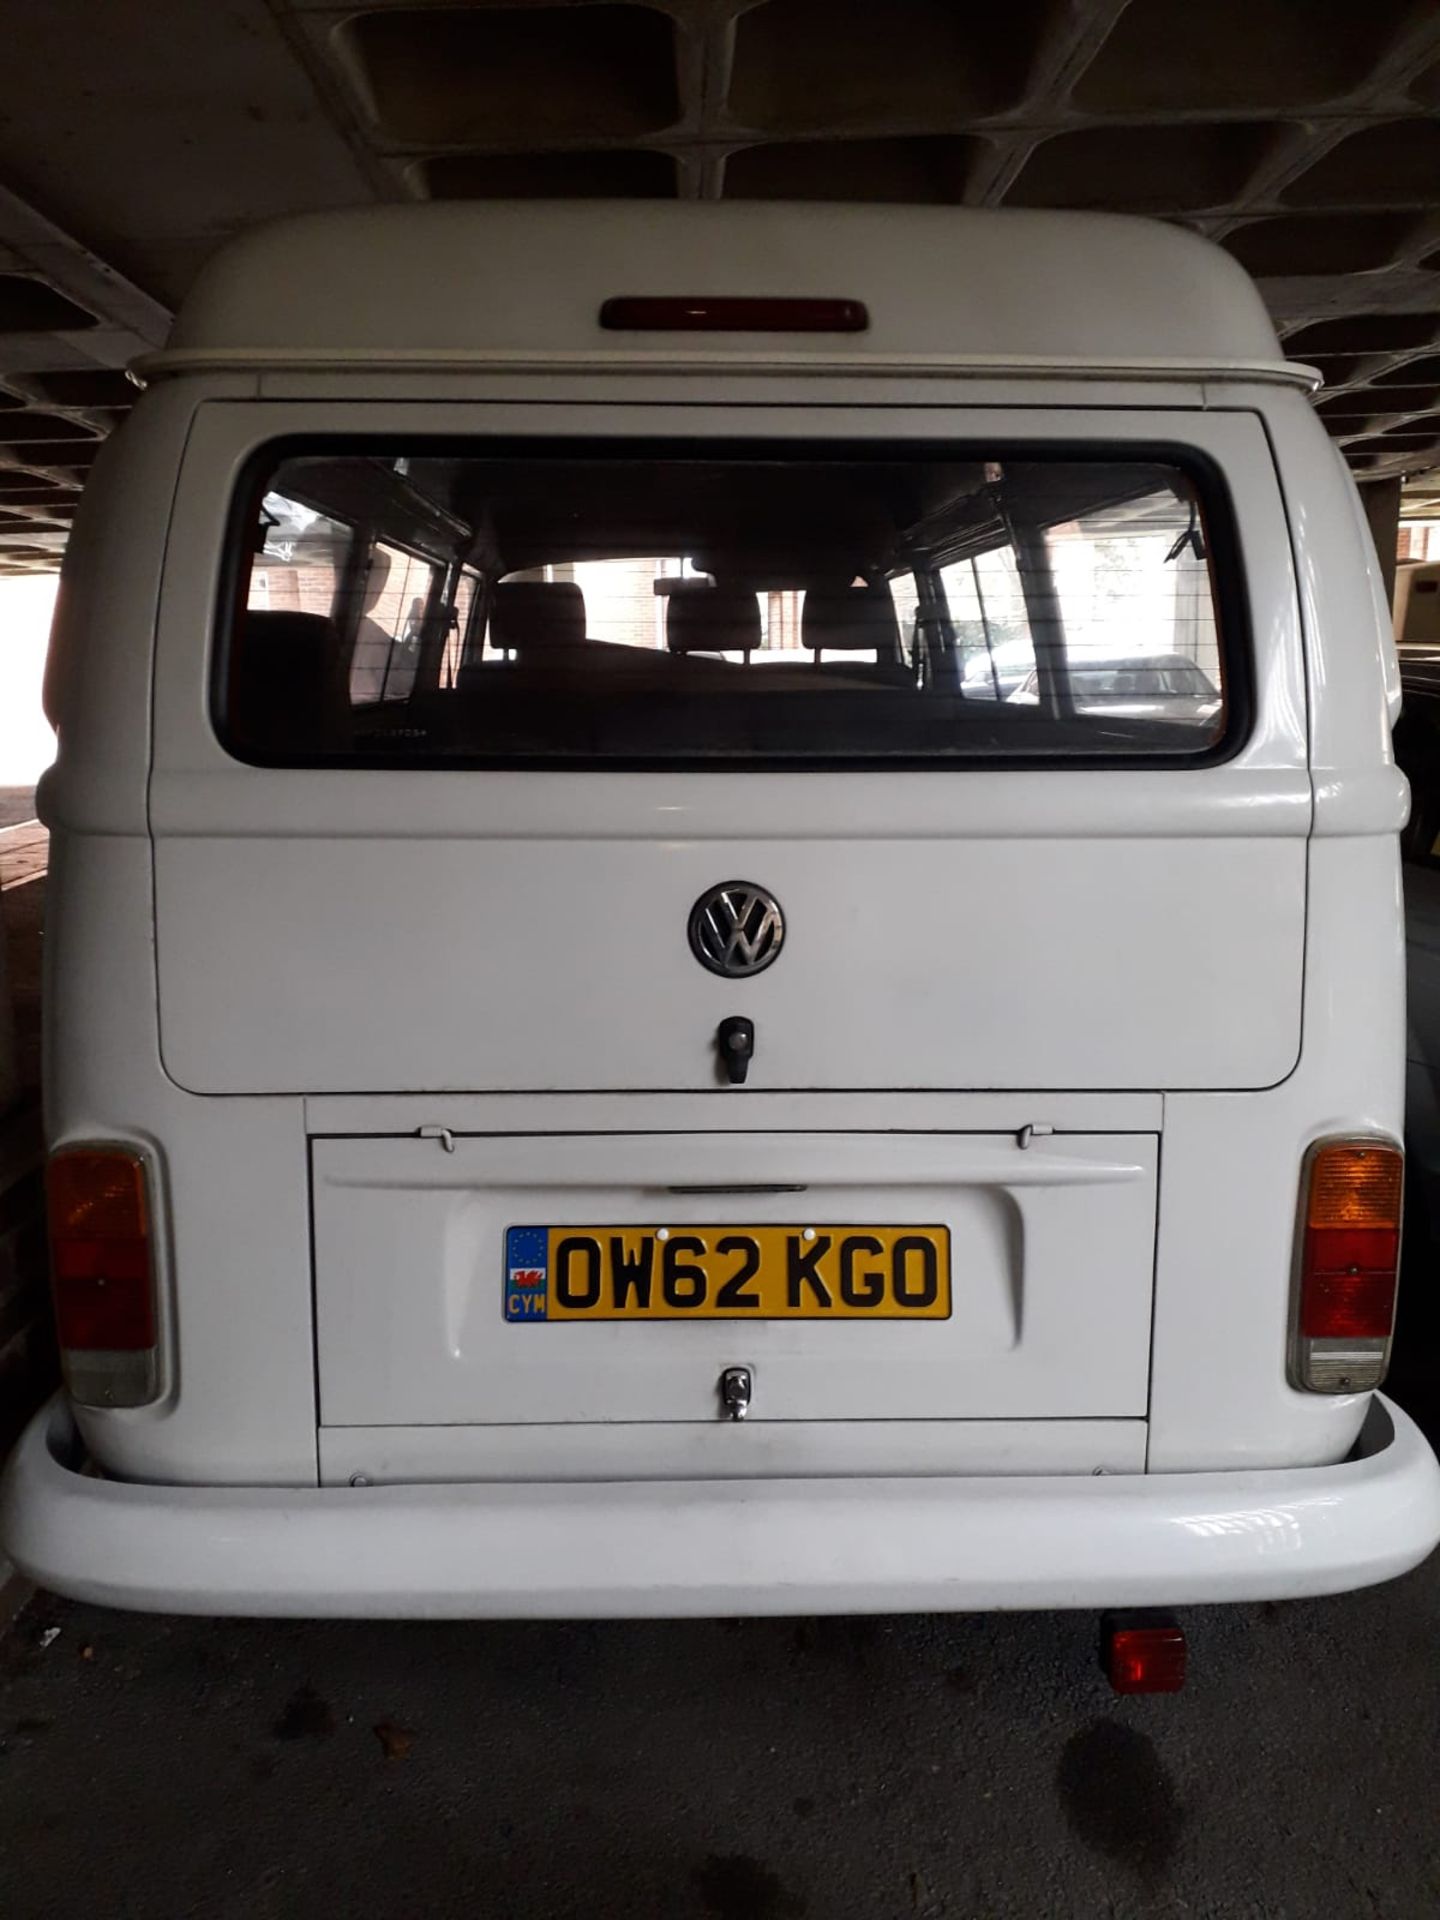 Volkswagen Camper Van - Brazilian Import (42k miles) - Image 13 of 14